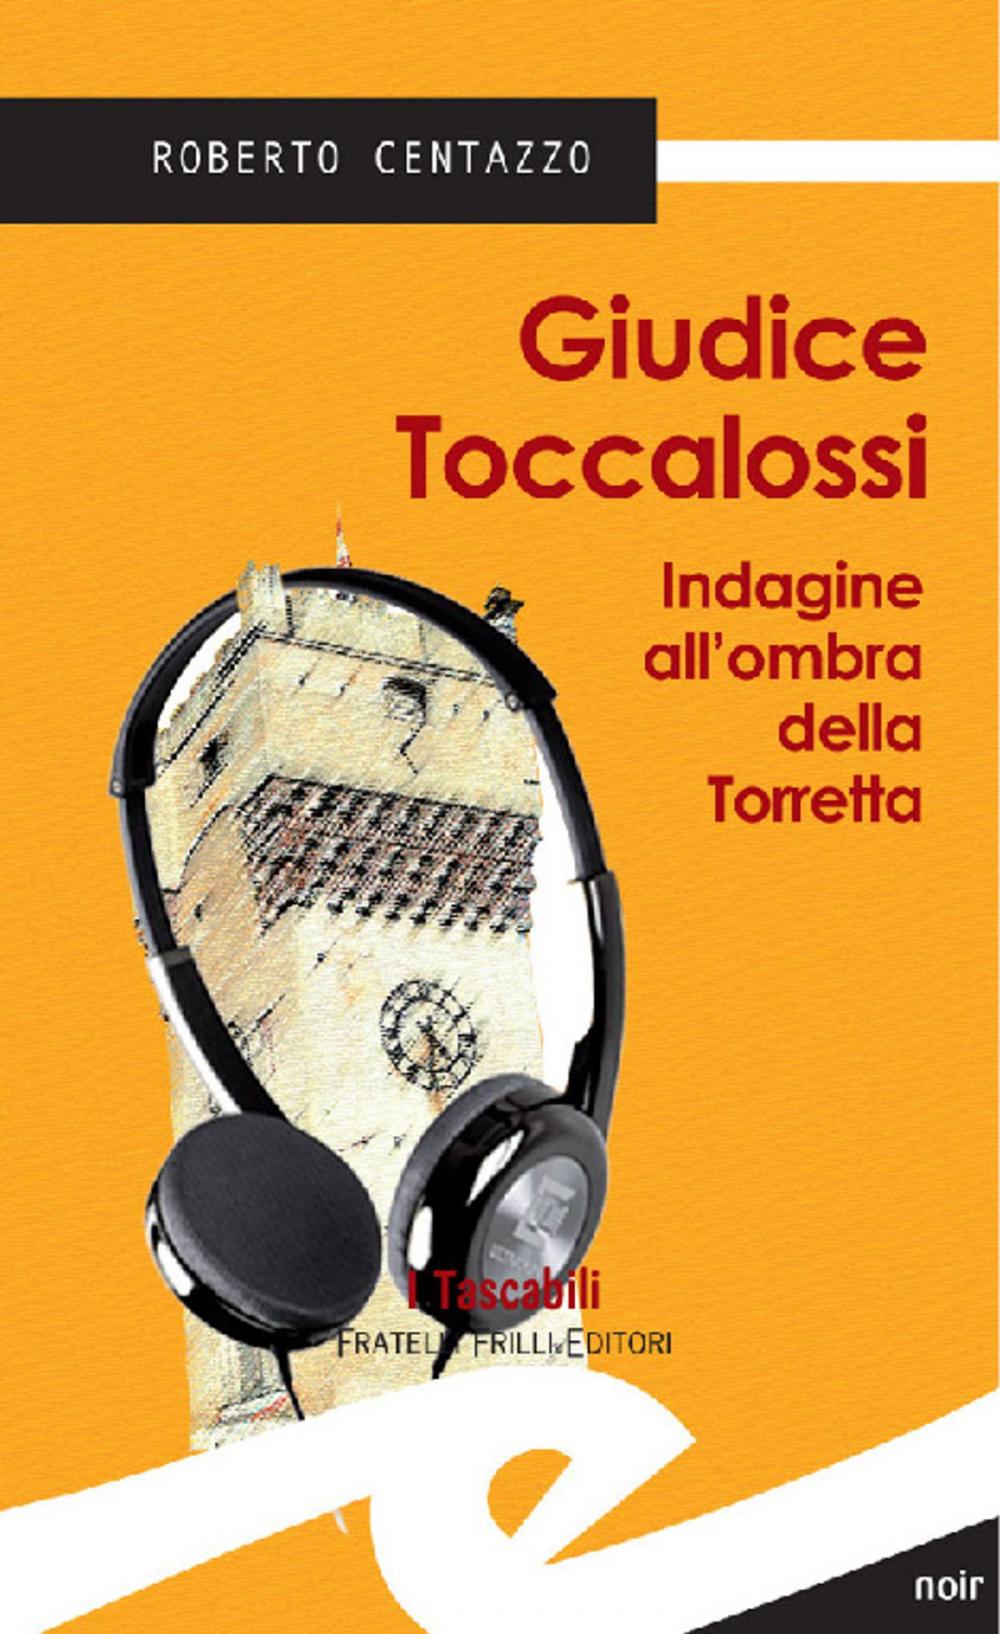 Big bigCover of Giudice Toccalossi